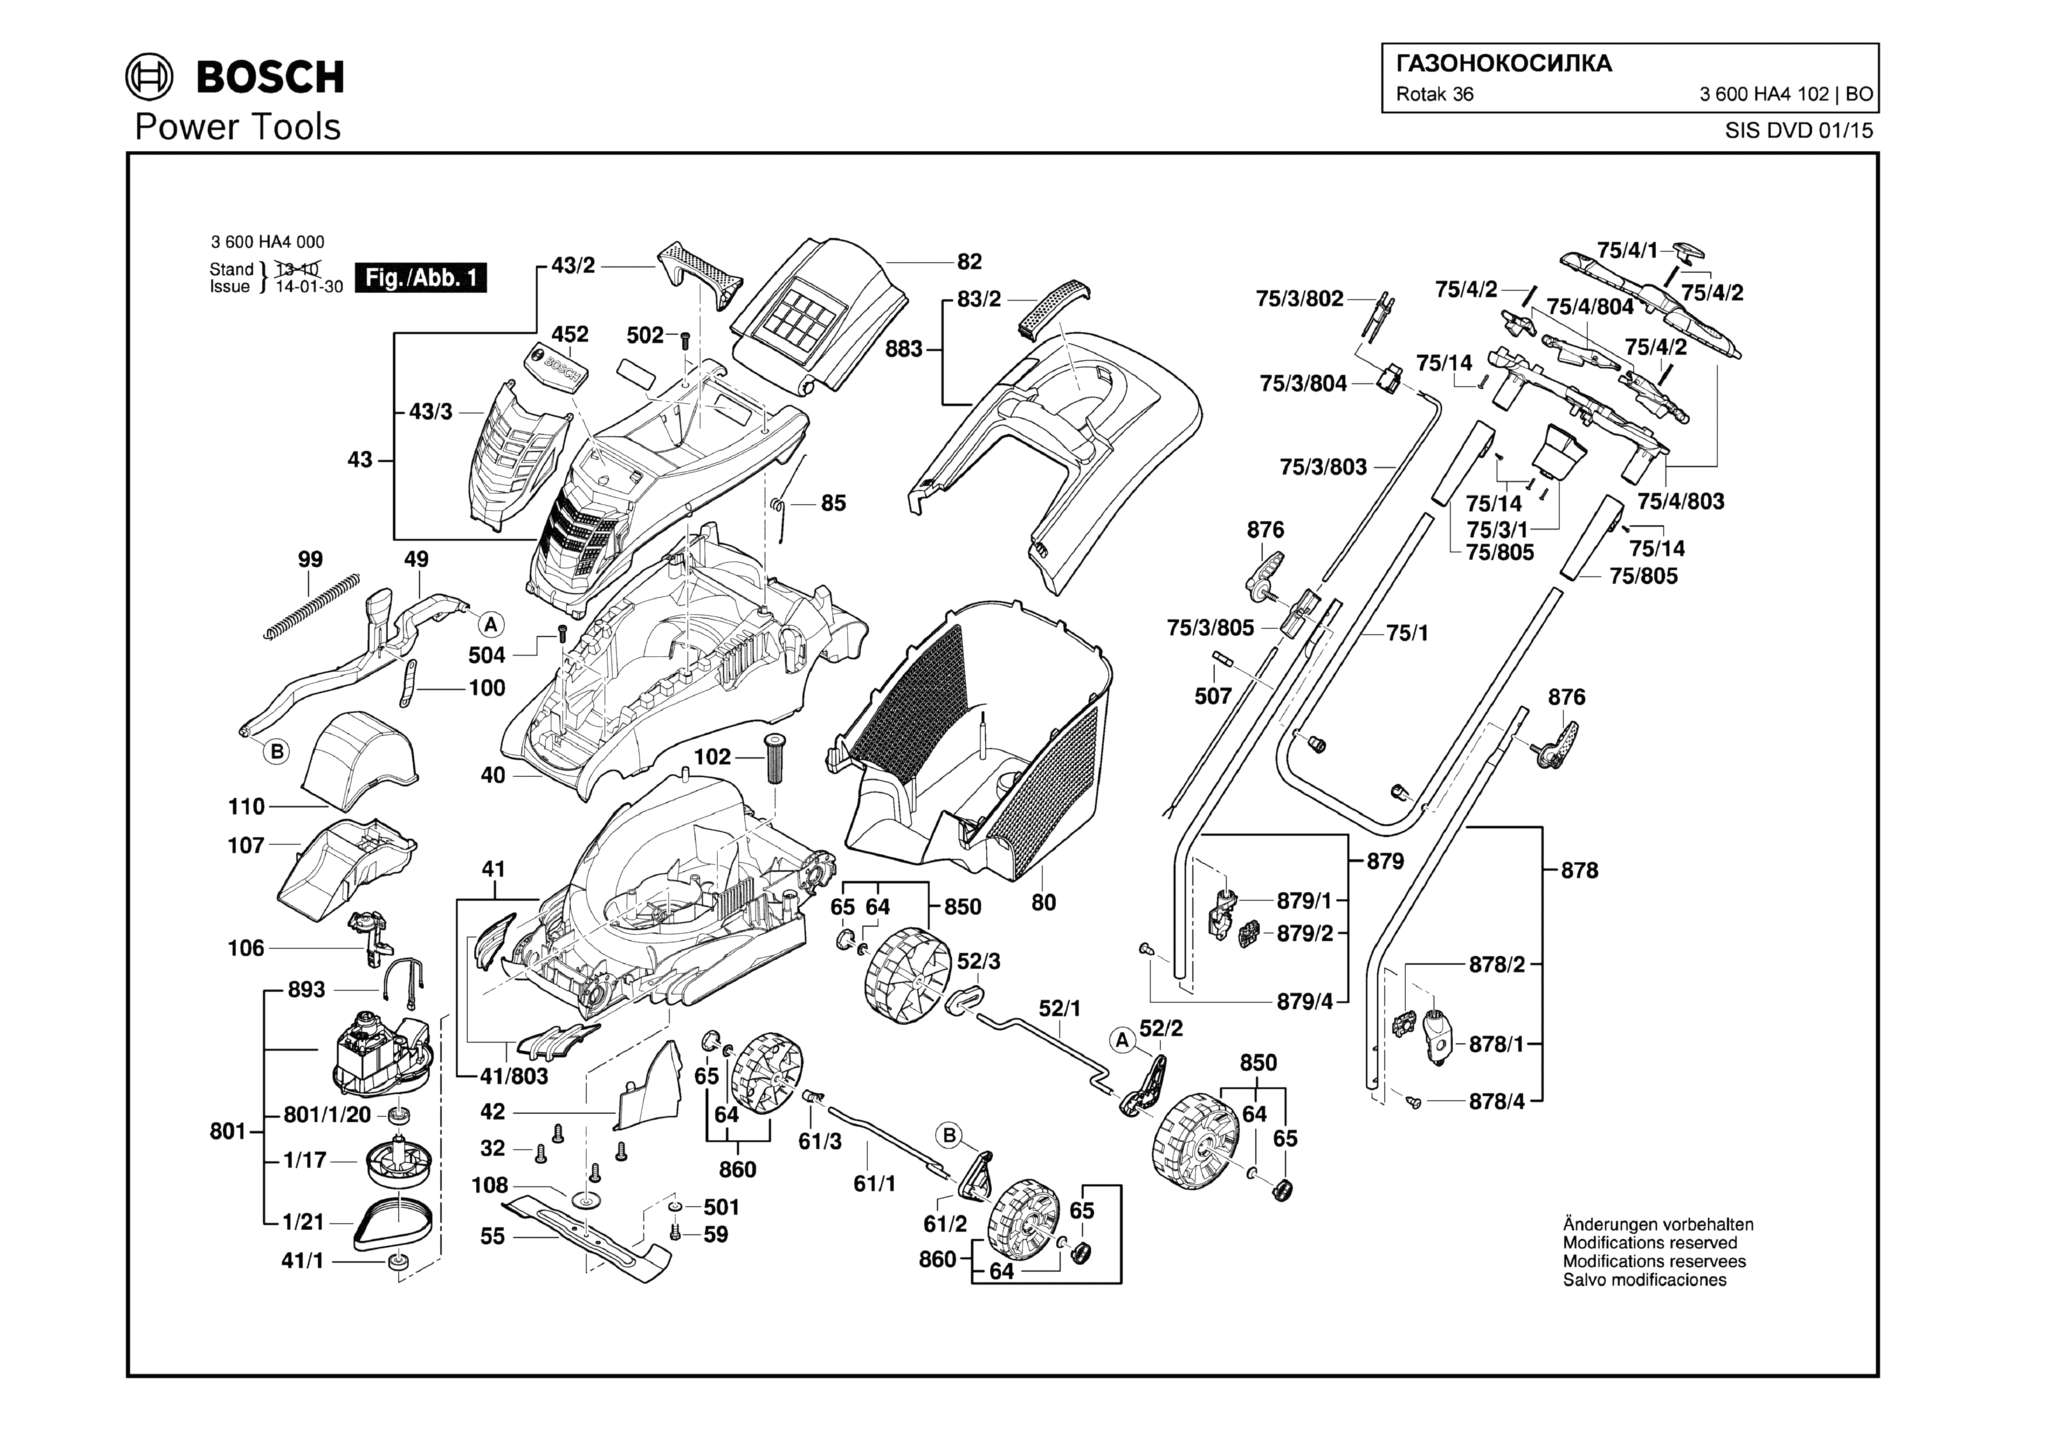 Запчасти, схема и деталировка Bosch ROTAK 36 (ТИП 3600HA4102)